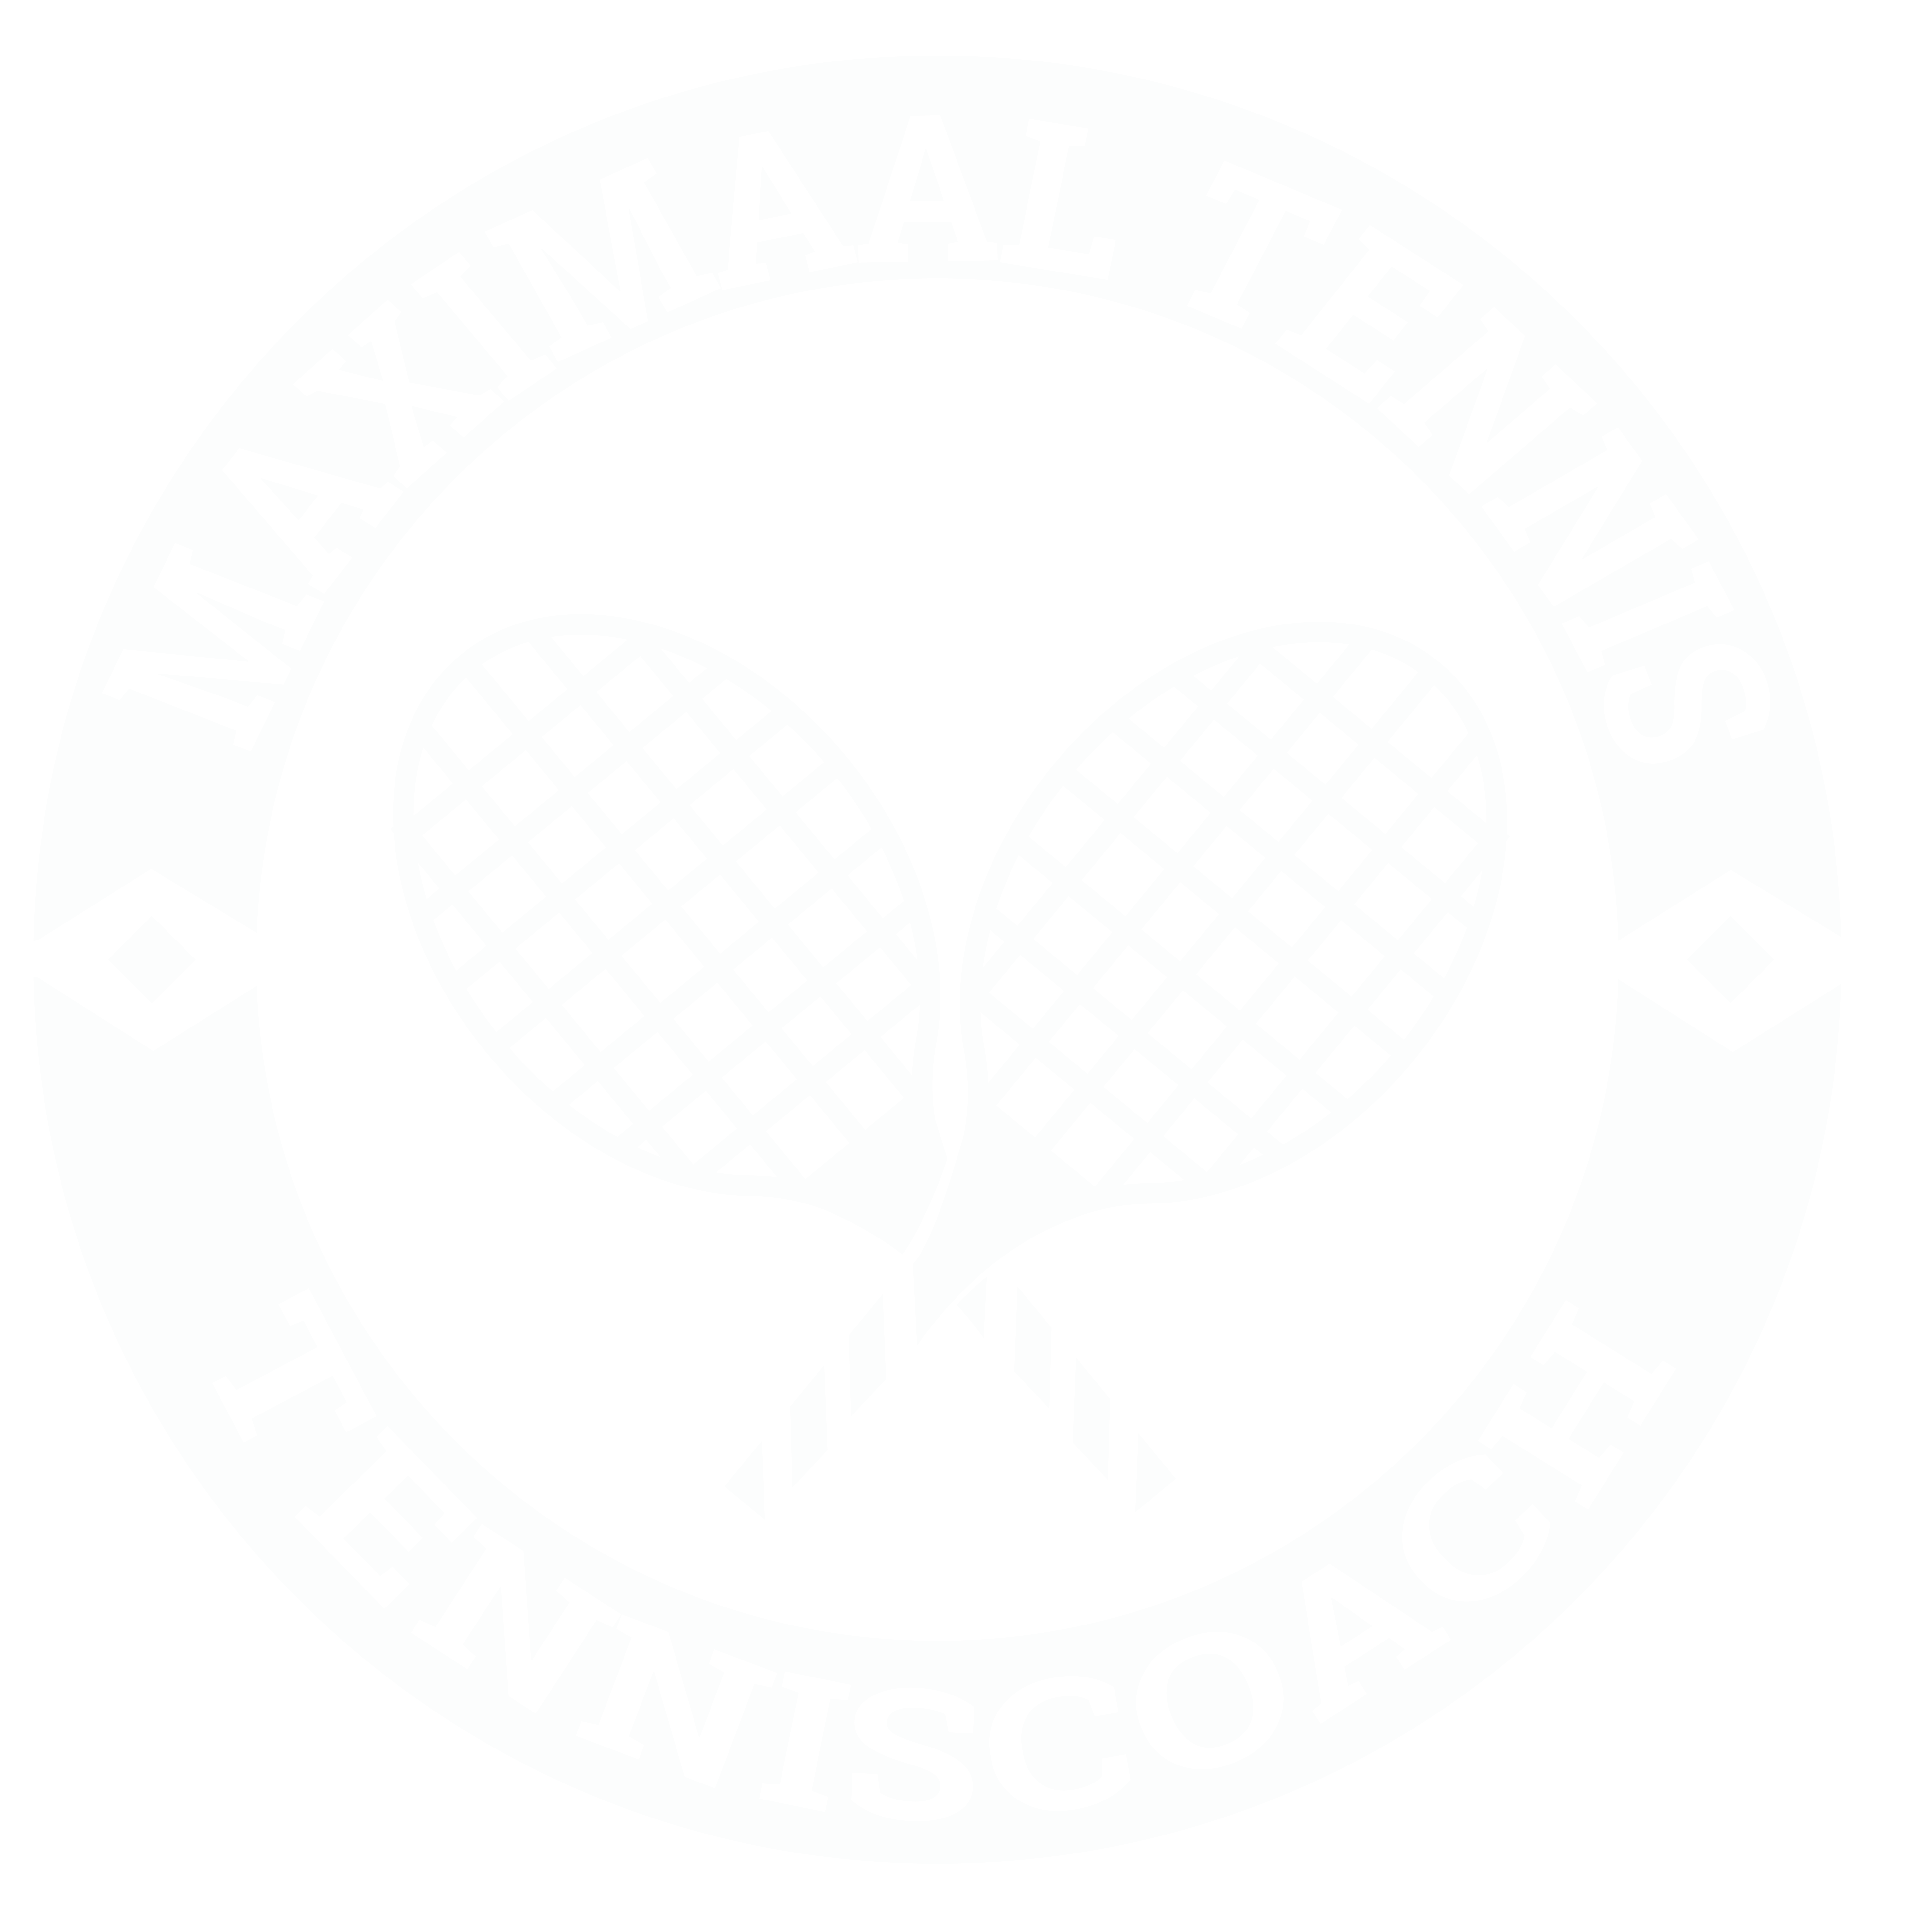 Maximaal Tennis